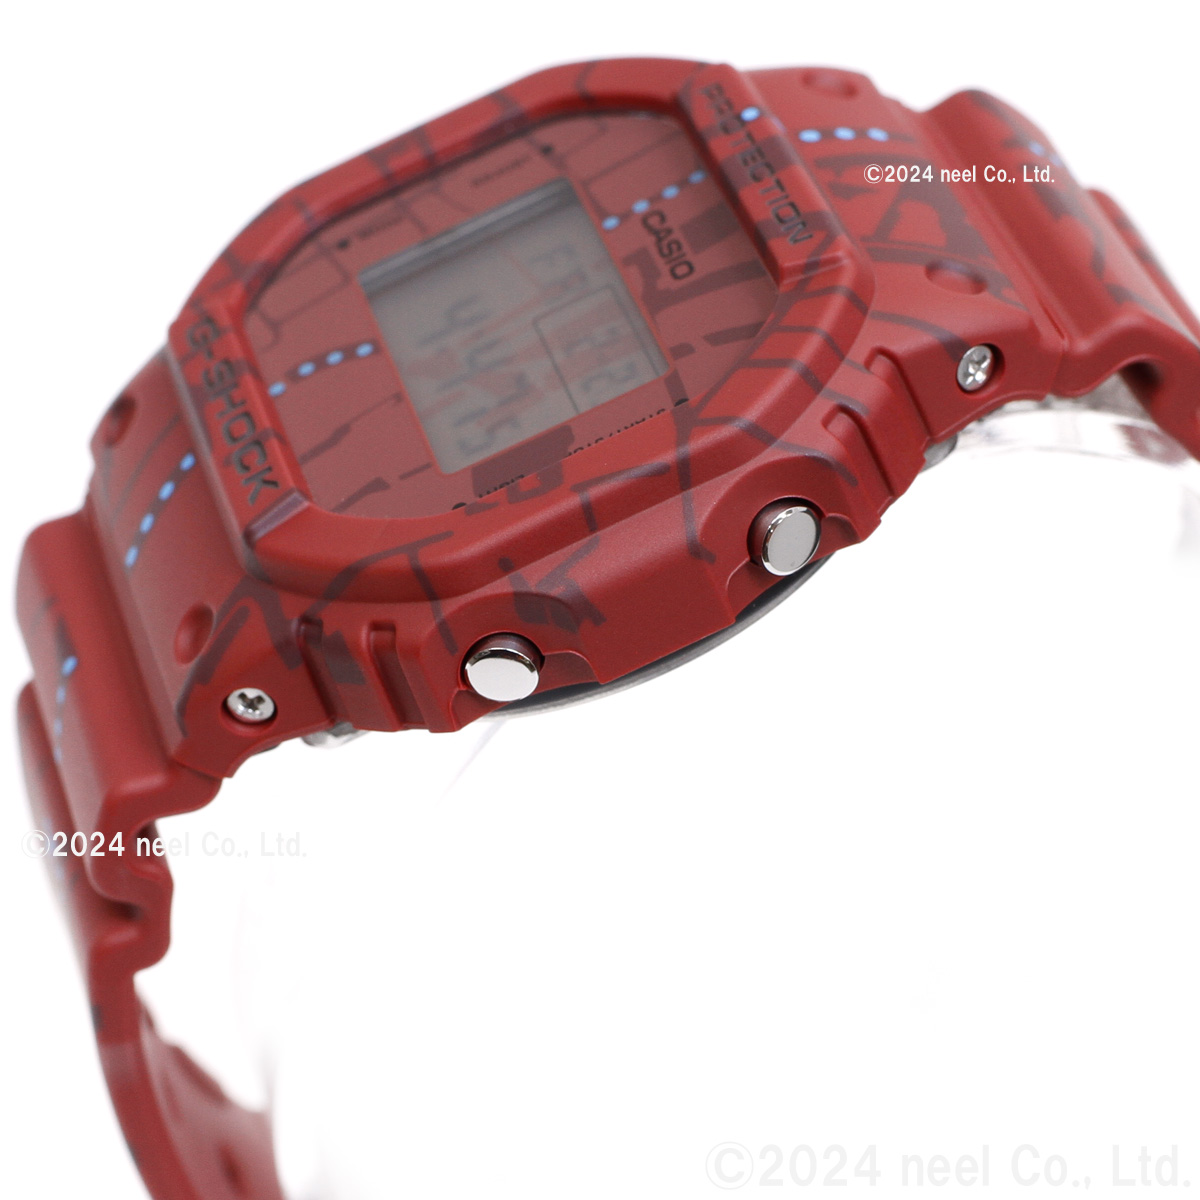 Gショック G-SHOCK 限定 腕時計 デジタル DW-5600SBY-4JR 渋谷の地図 